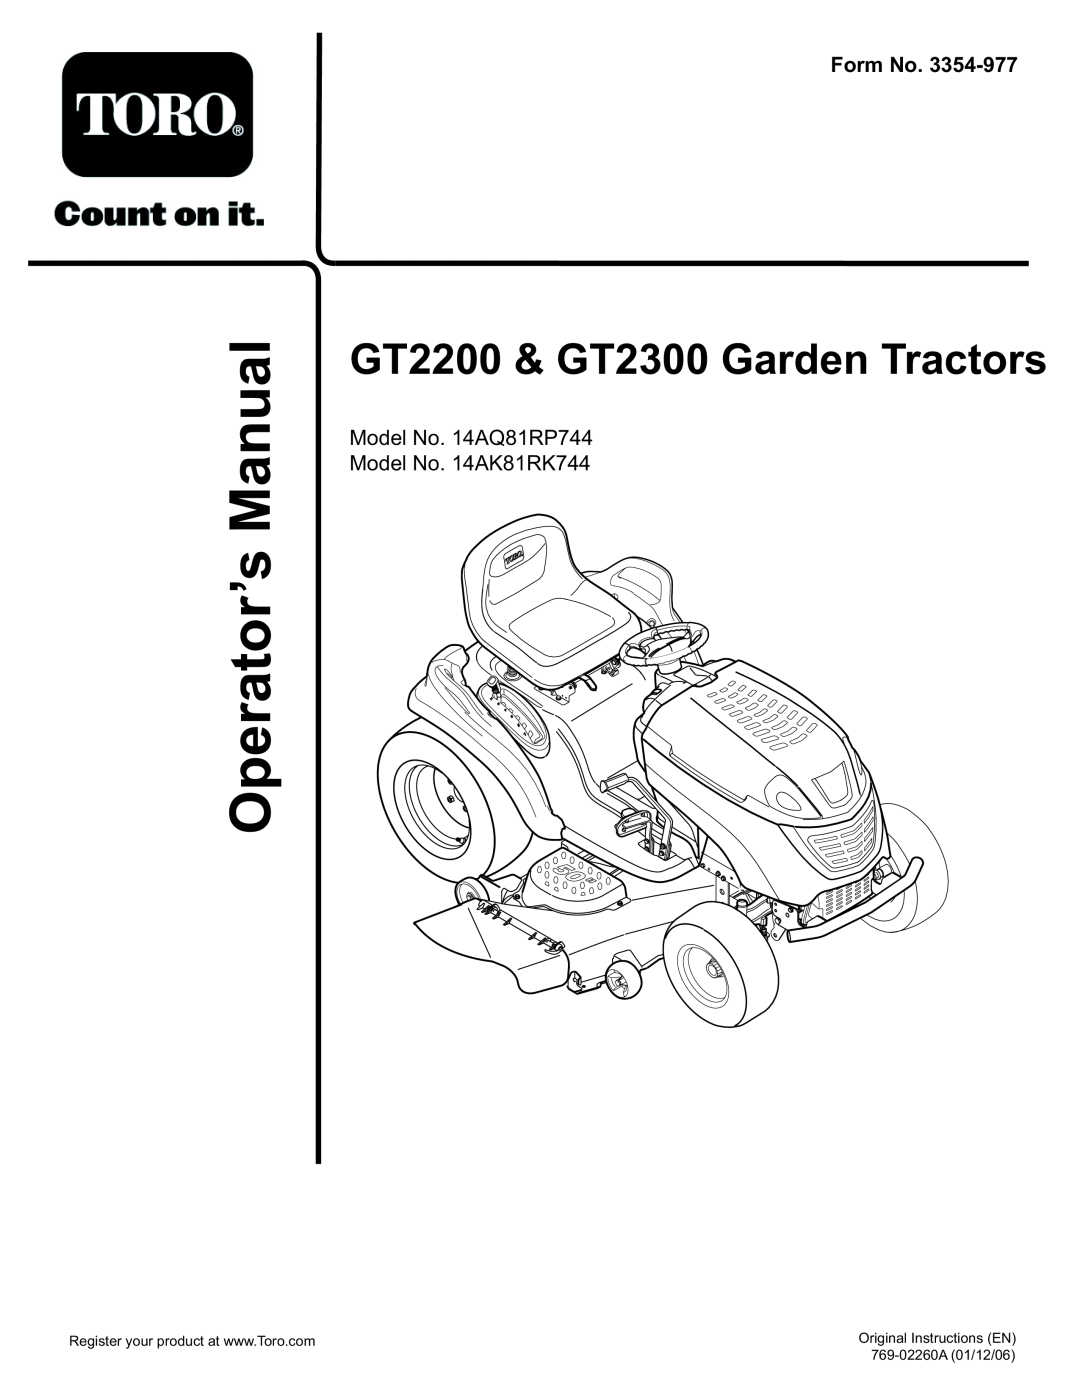 Toro 14AQ81RP544, 14AK81RK544 manual ManualOperator’s, Form No, GT2200 & GT2300 Garden Tractors, Original Instructions EN 